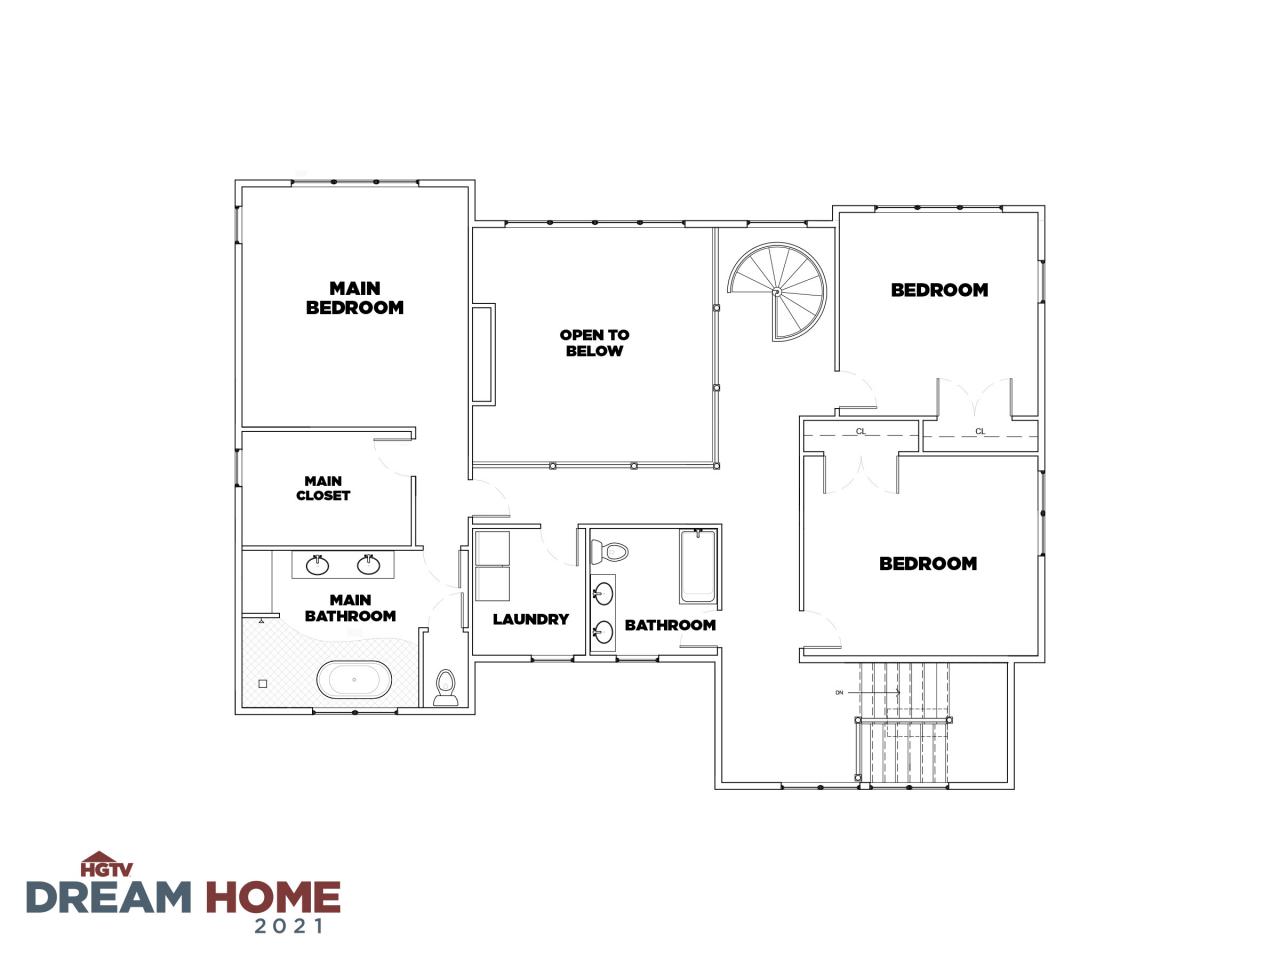 Hgtv Dream Home House Plans Home Design Ideas